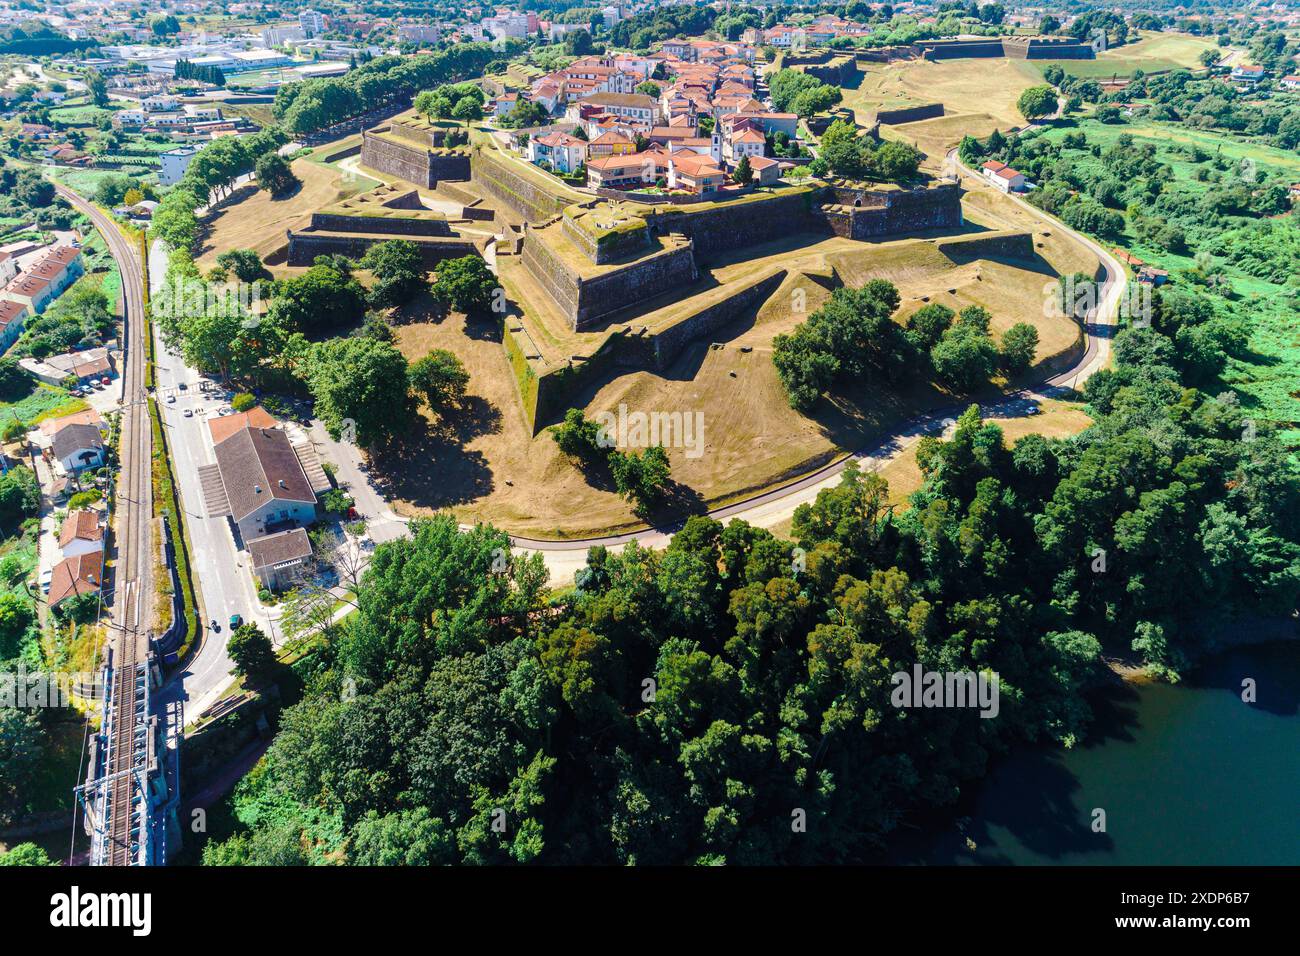 Fotografia aerea con droni del villaggio fortificato di Valenca do Minho, a nord del Portogallo Foto Stock